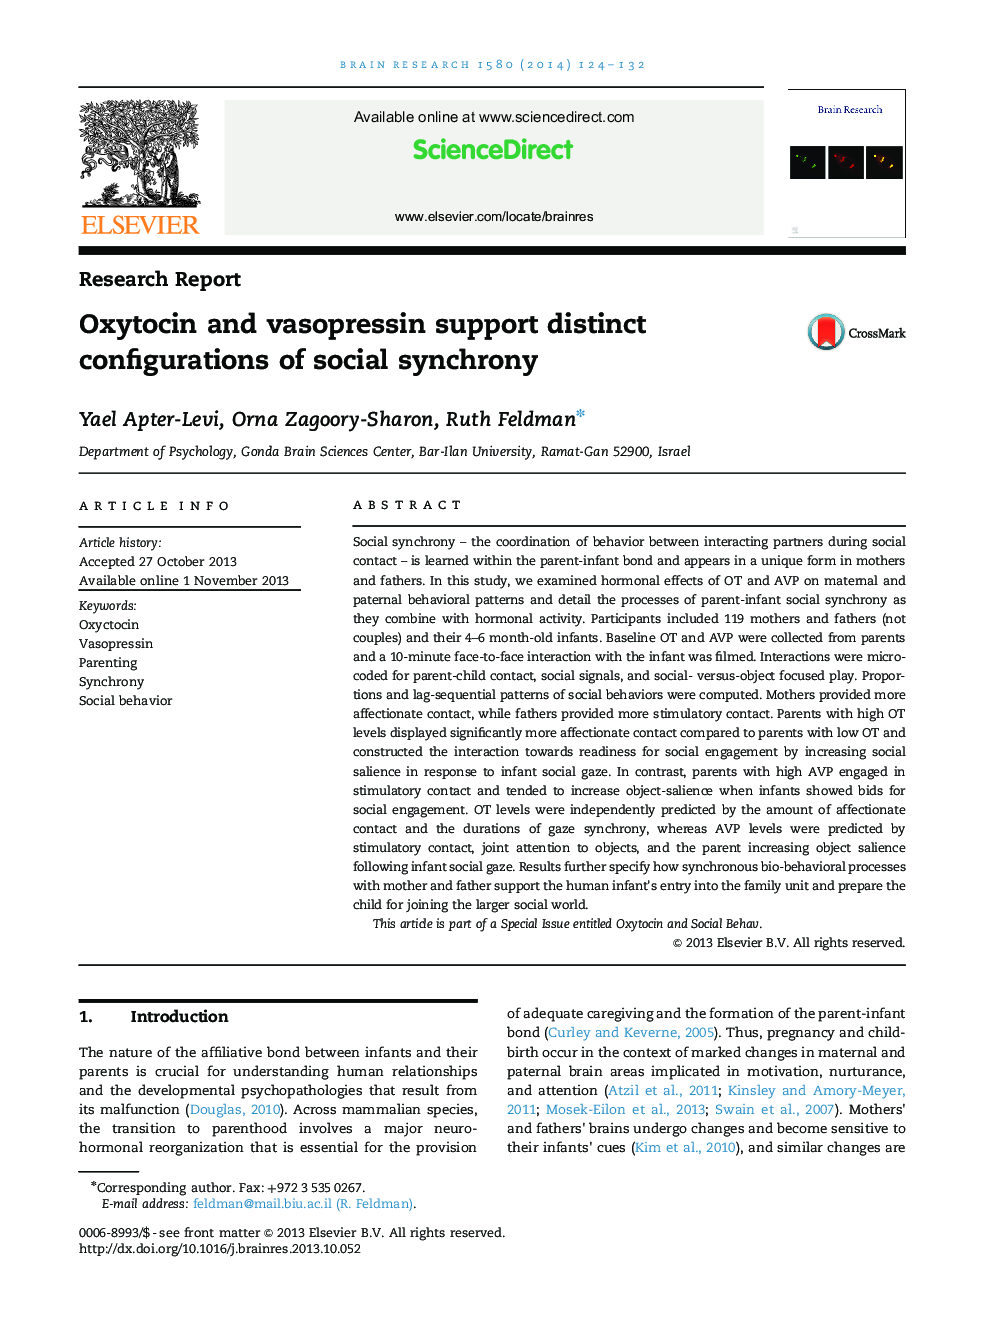 اکسی توسین و واسپرسین از تنظیمات متمایز هماهنگی اجتماعی پشتیبانی می کند 